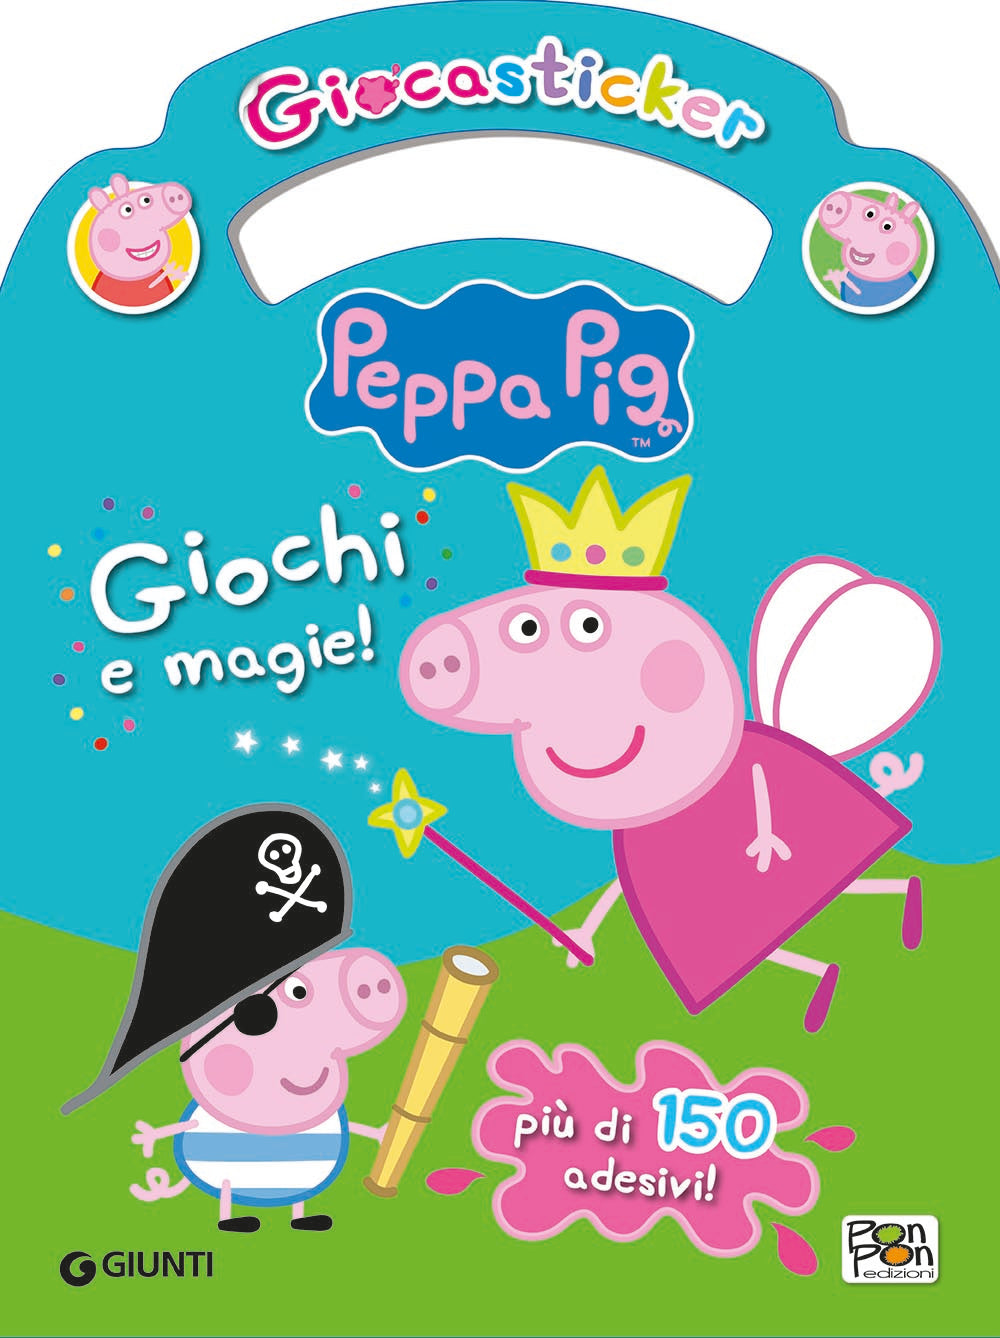 Giocasticker Peppa Pig - Giochi e magie!, Cristina Panzeri